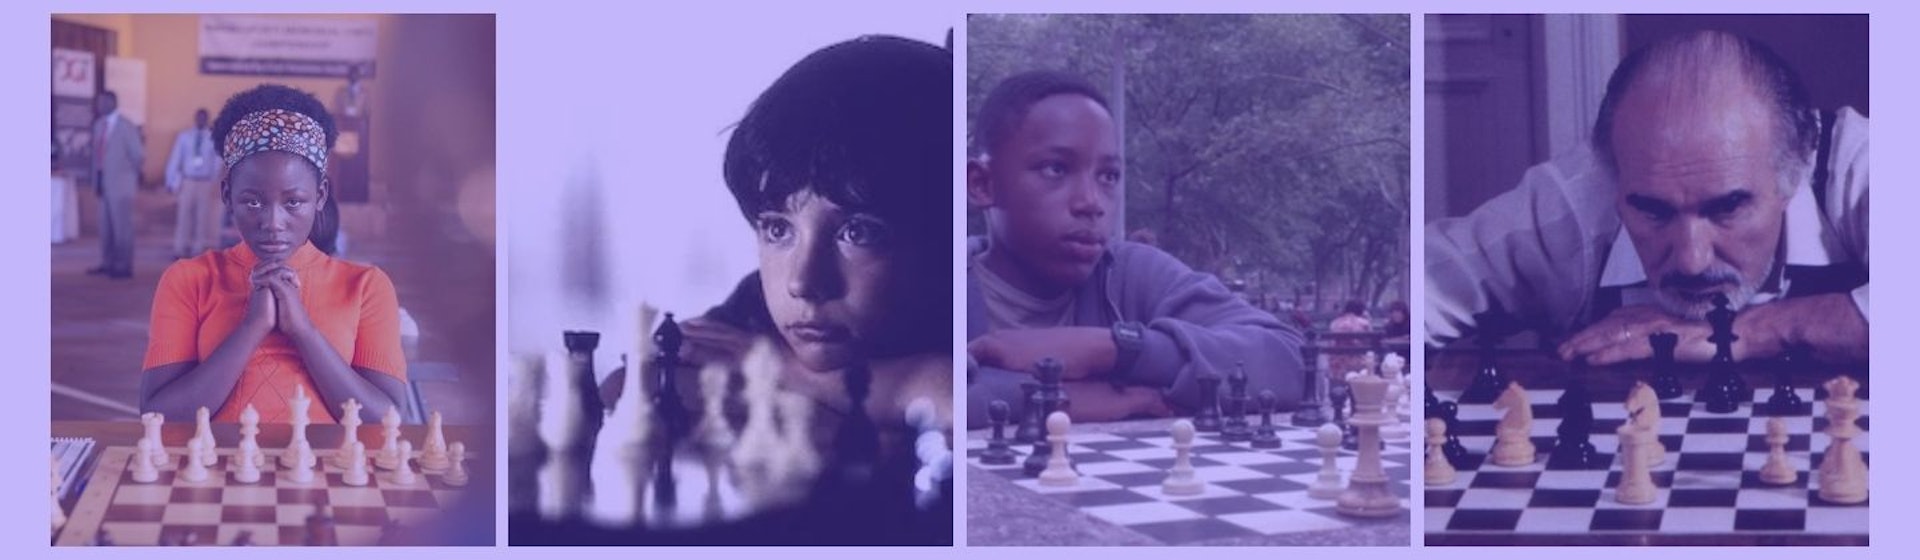 10 películas de ajedrez para hacerle jaque al aburrimiento